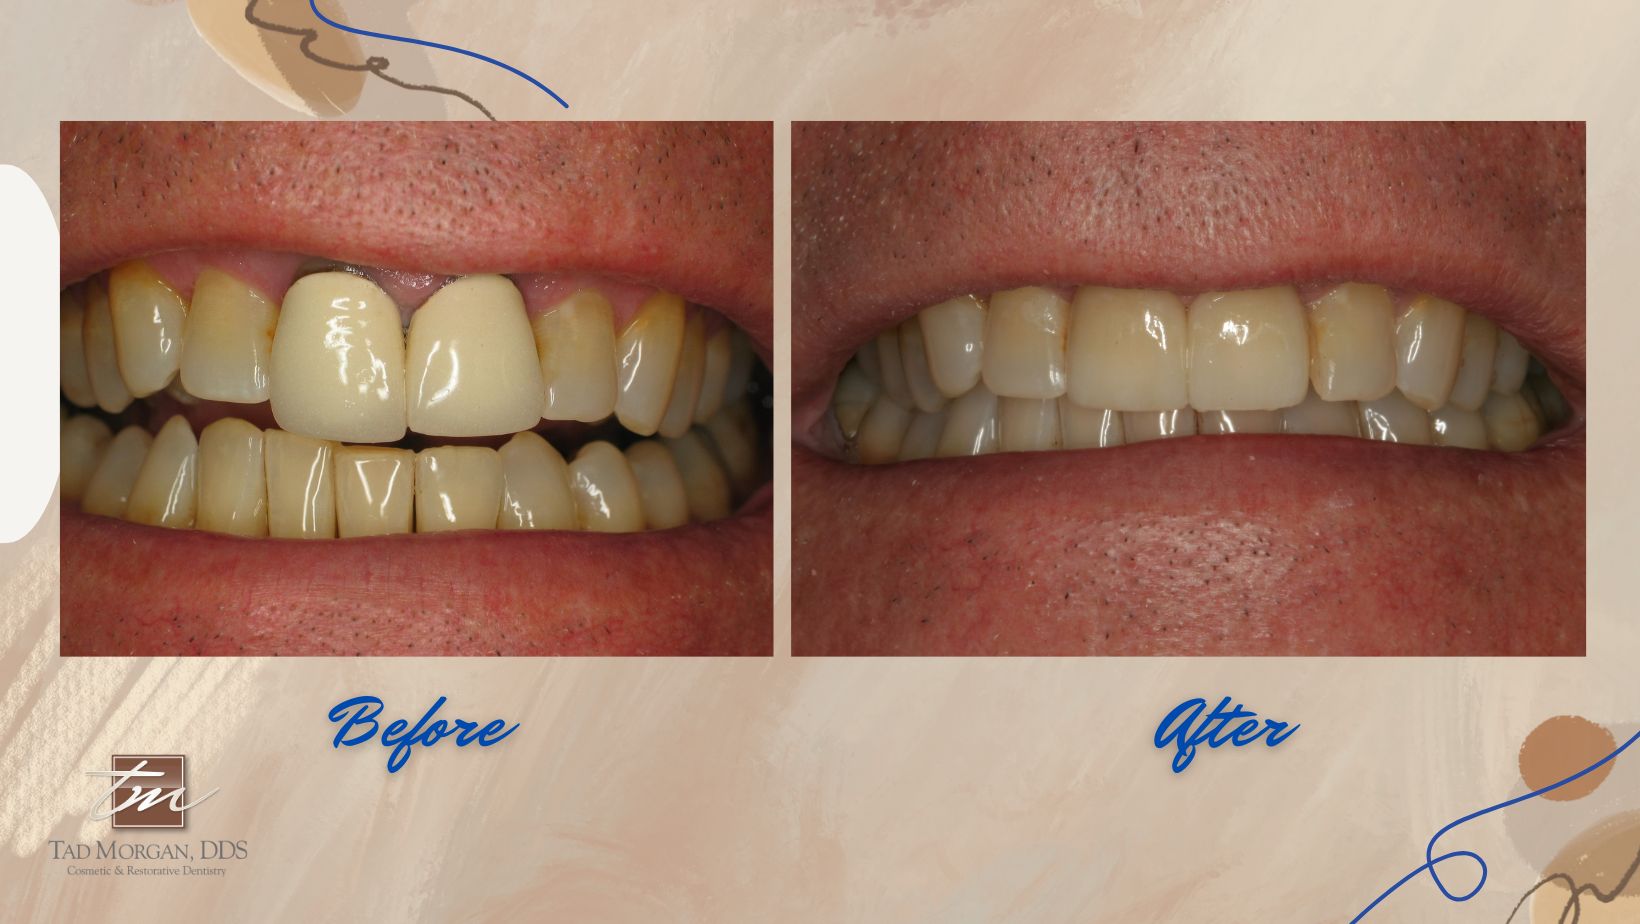 A man's teeth before and after dental veneers.